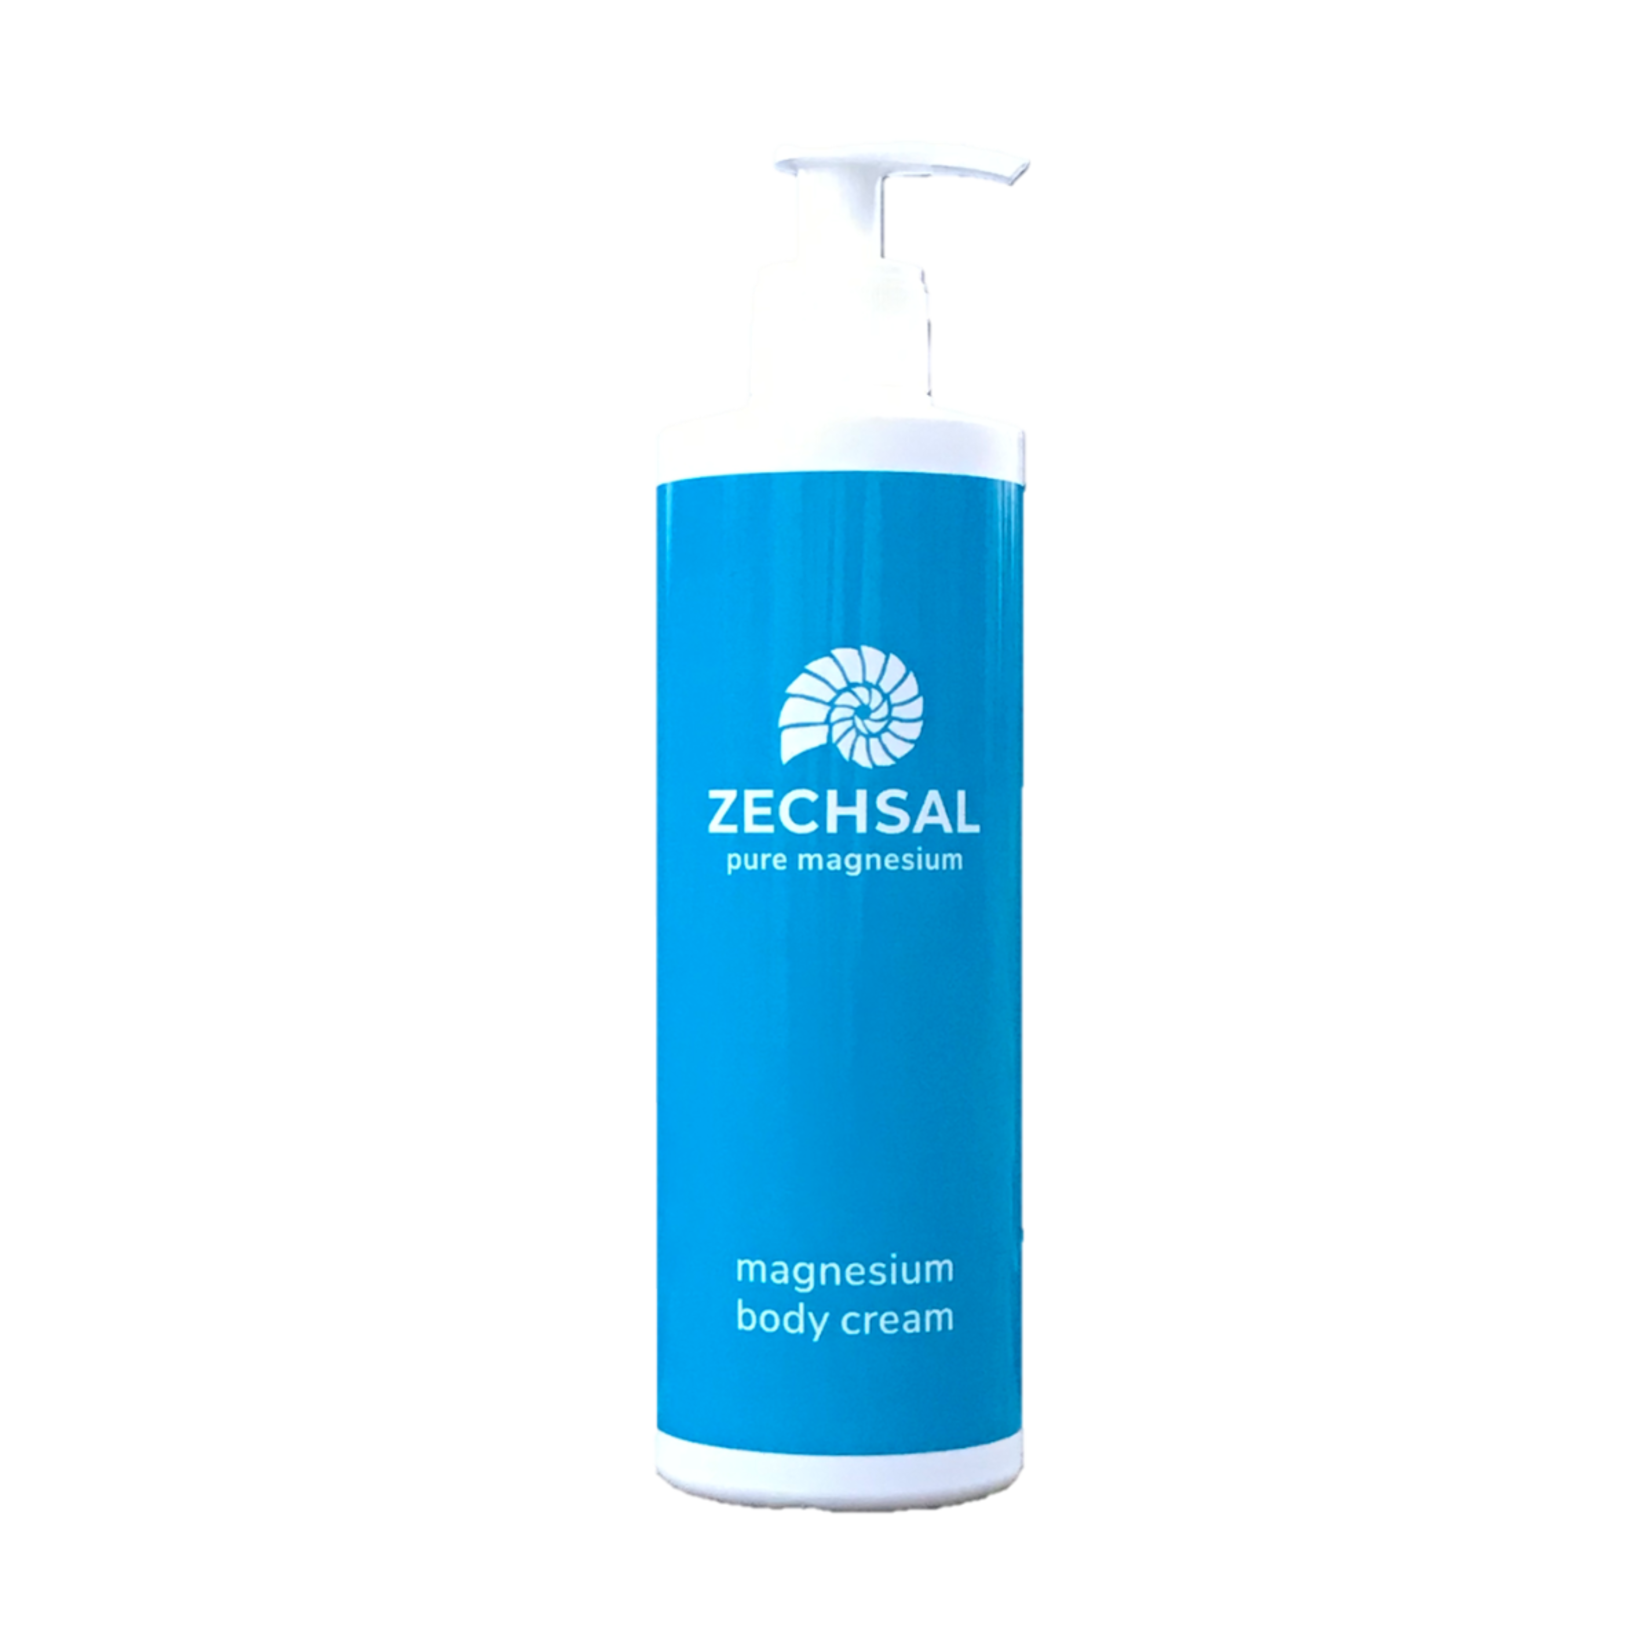 Zechsal Zechsal Body Cream groot formaat met pompje -  helend bij huidproblemen